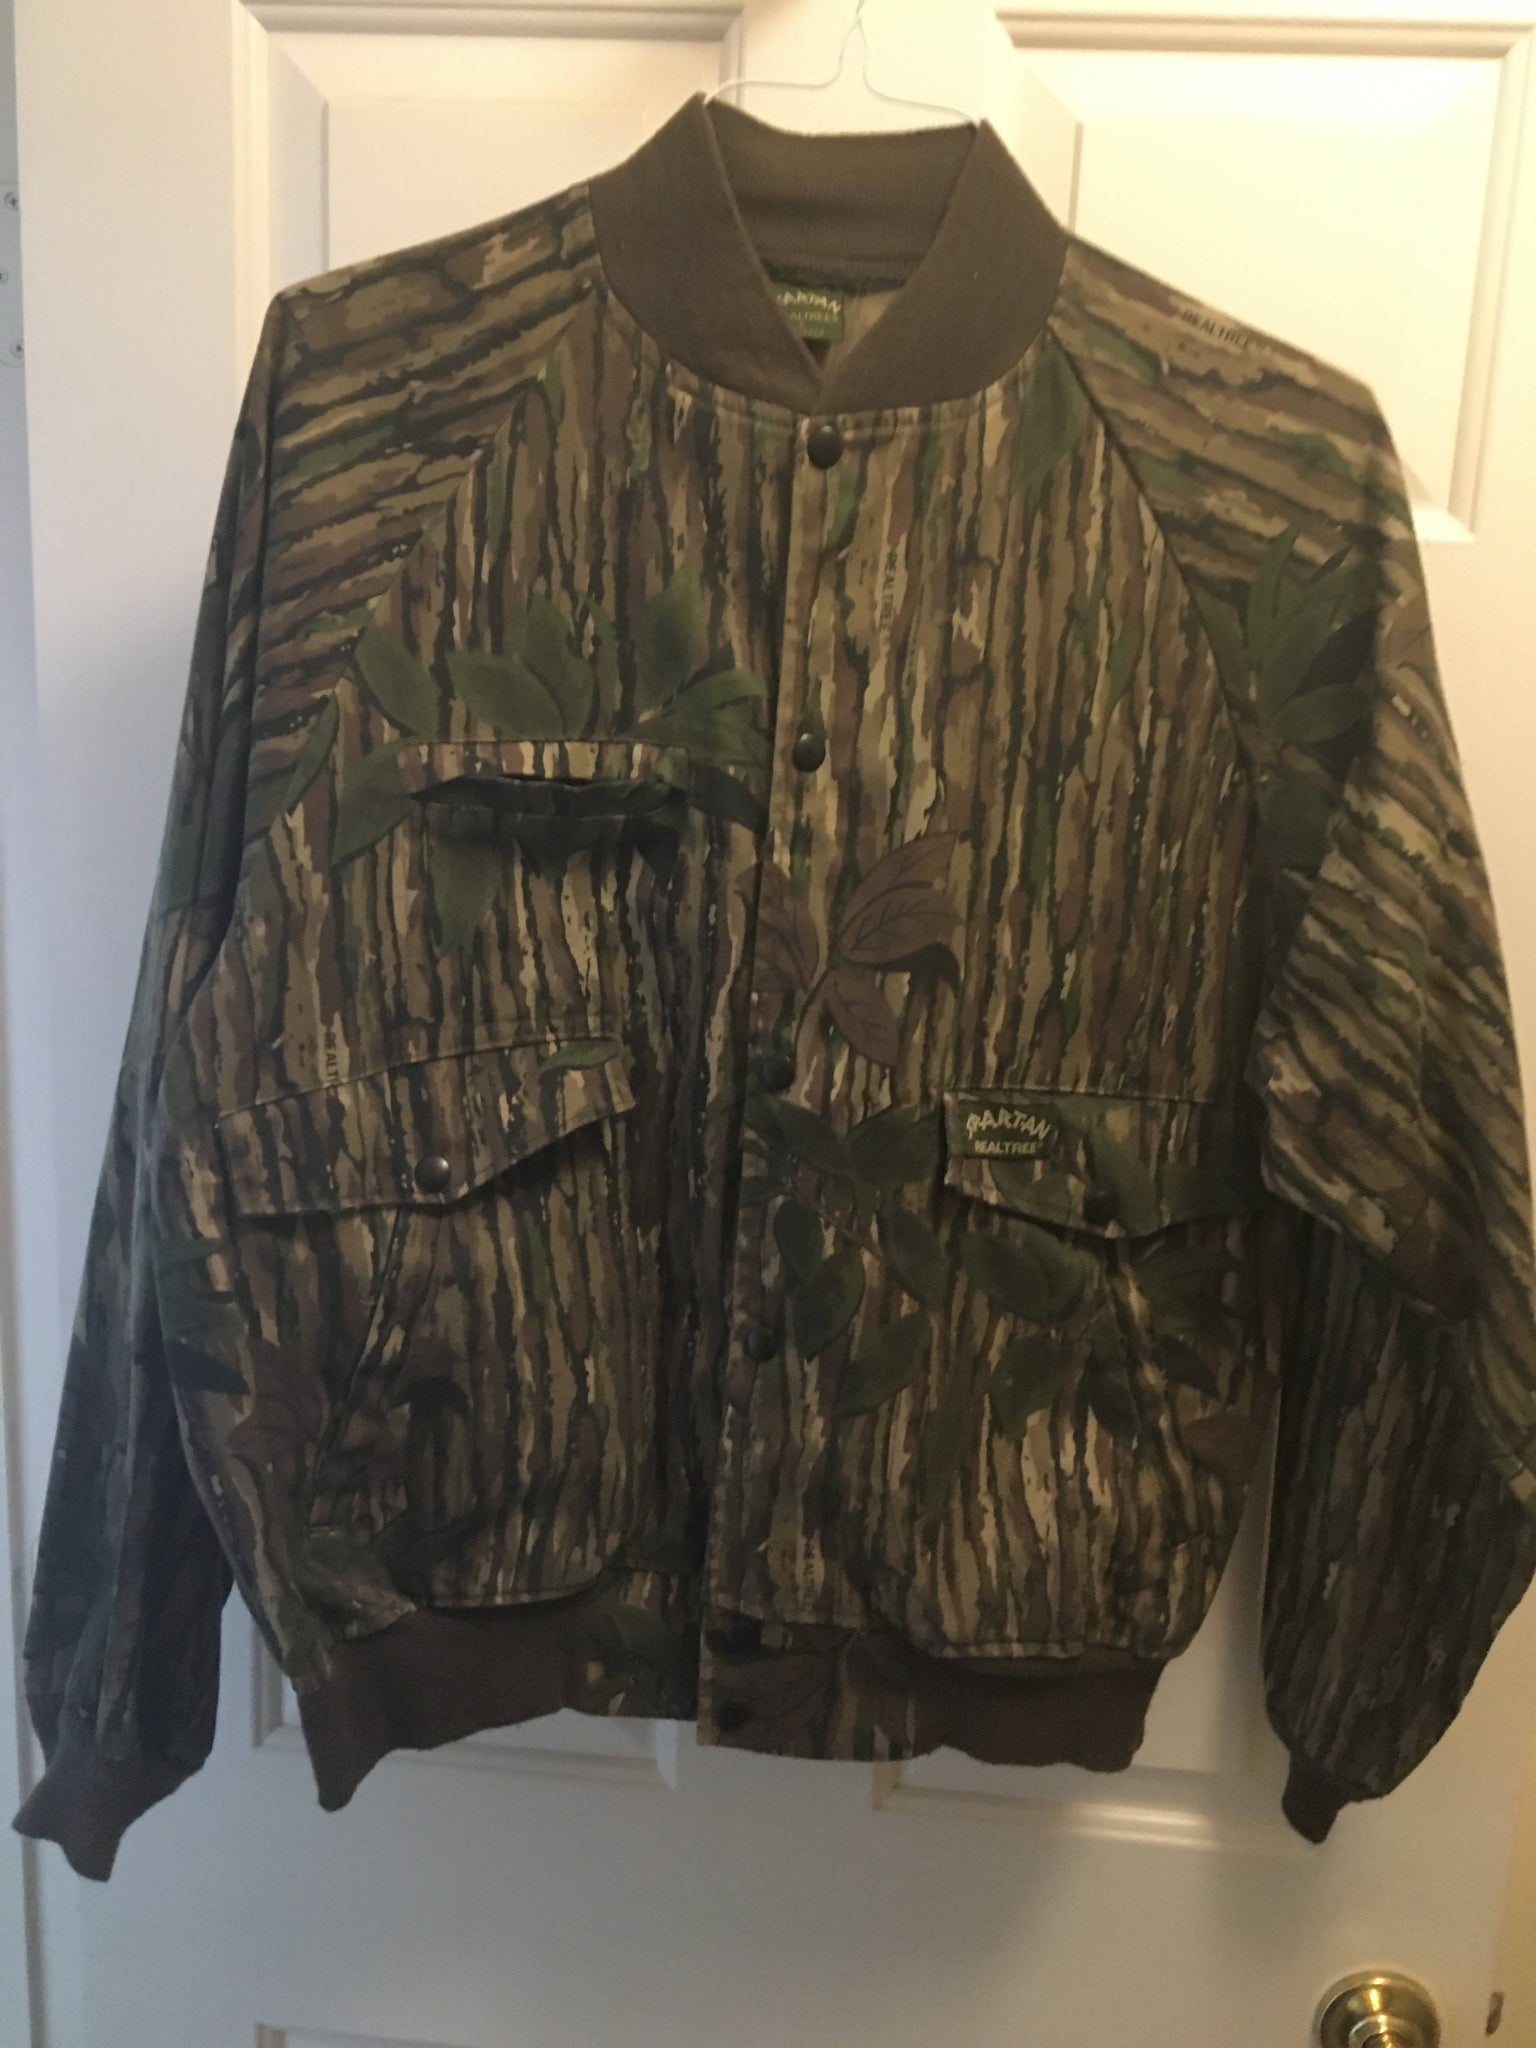 Spartan Realtree jacket